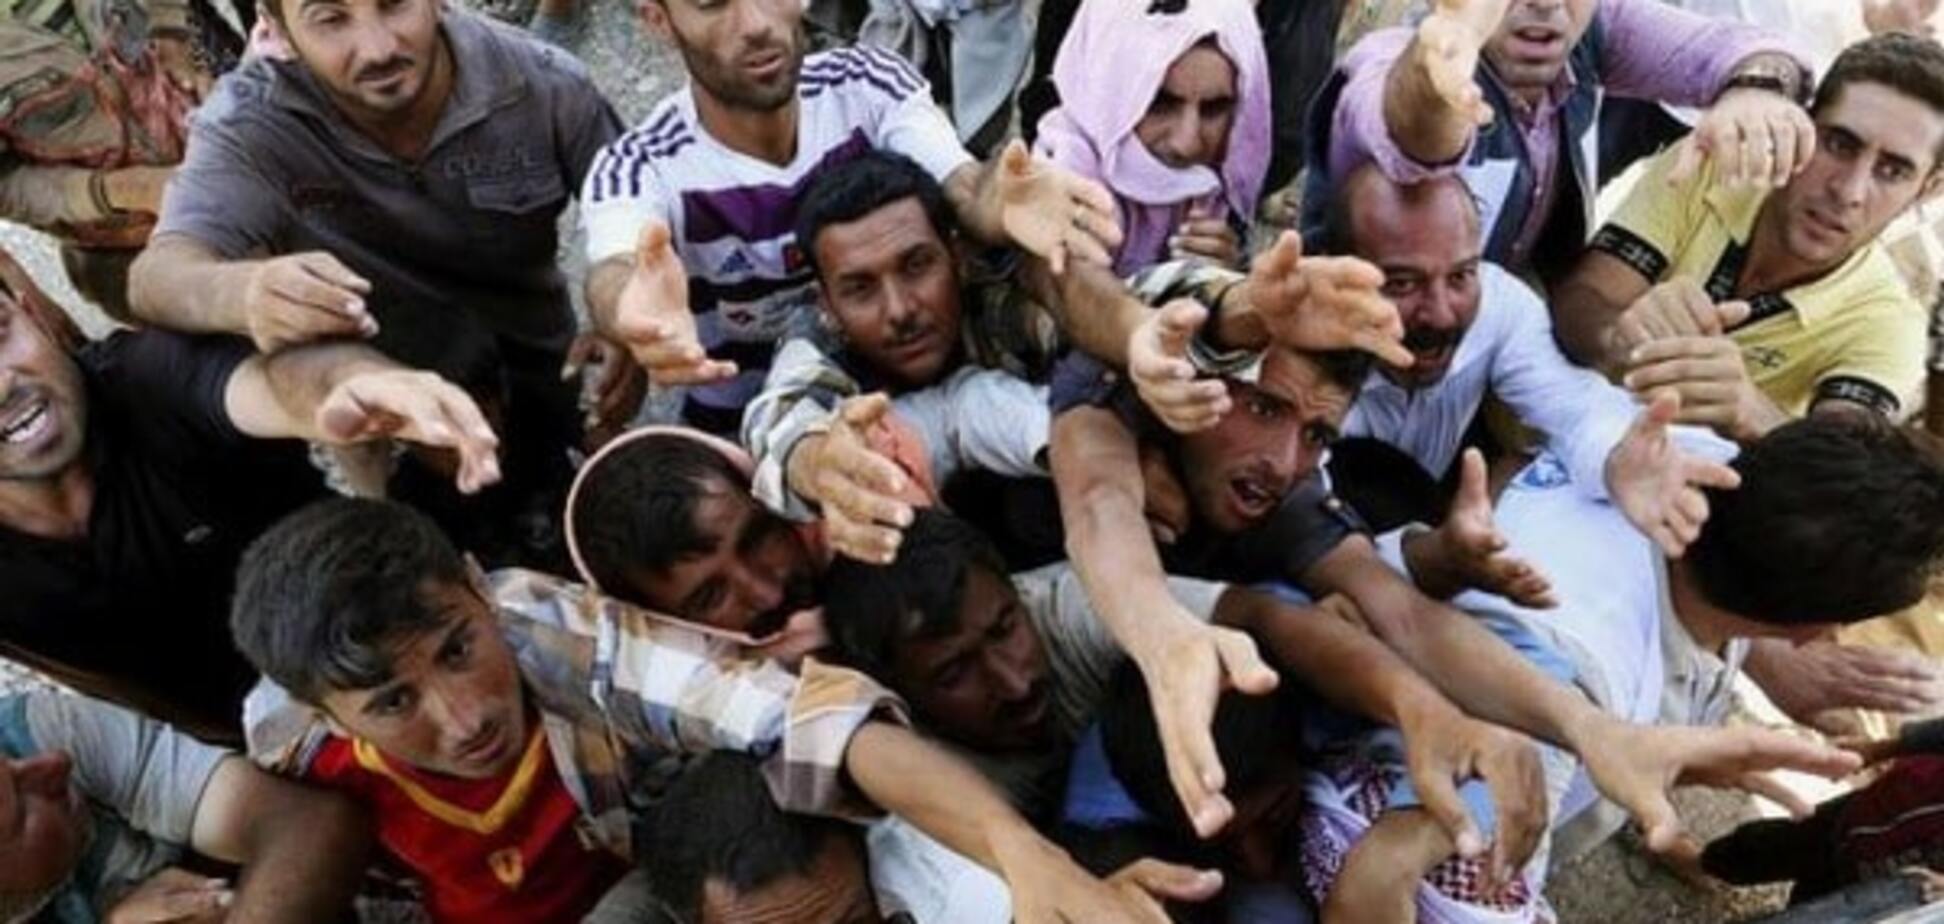 'Ласкаво просимо!': у Швеції 100 осіб у масках побили мігрантів